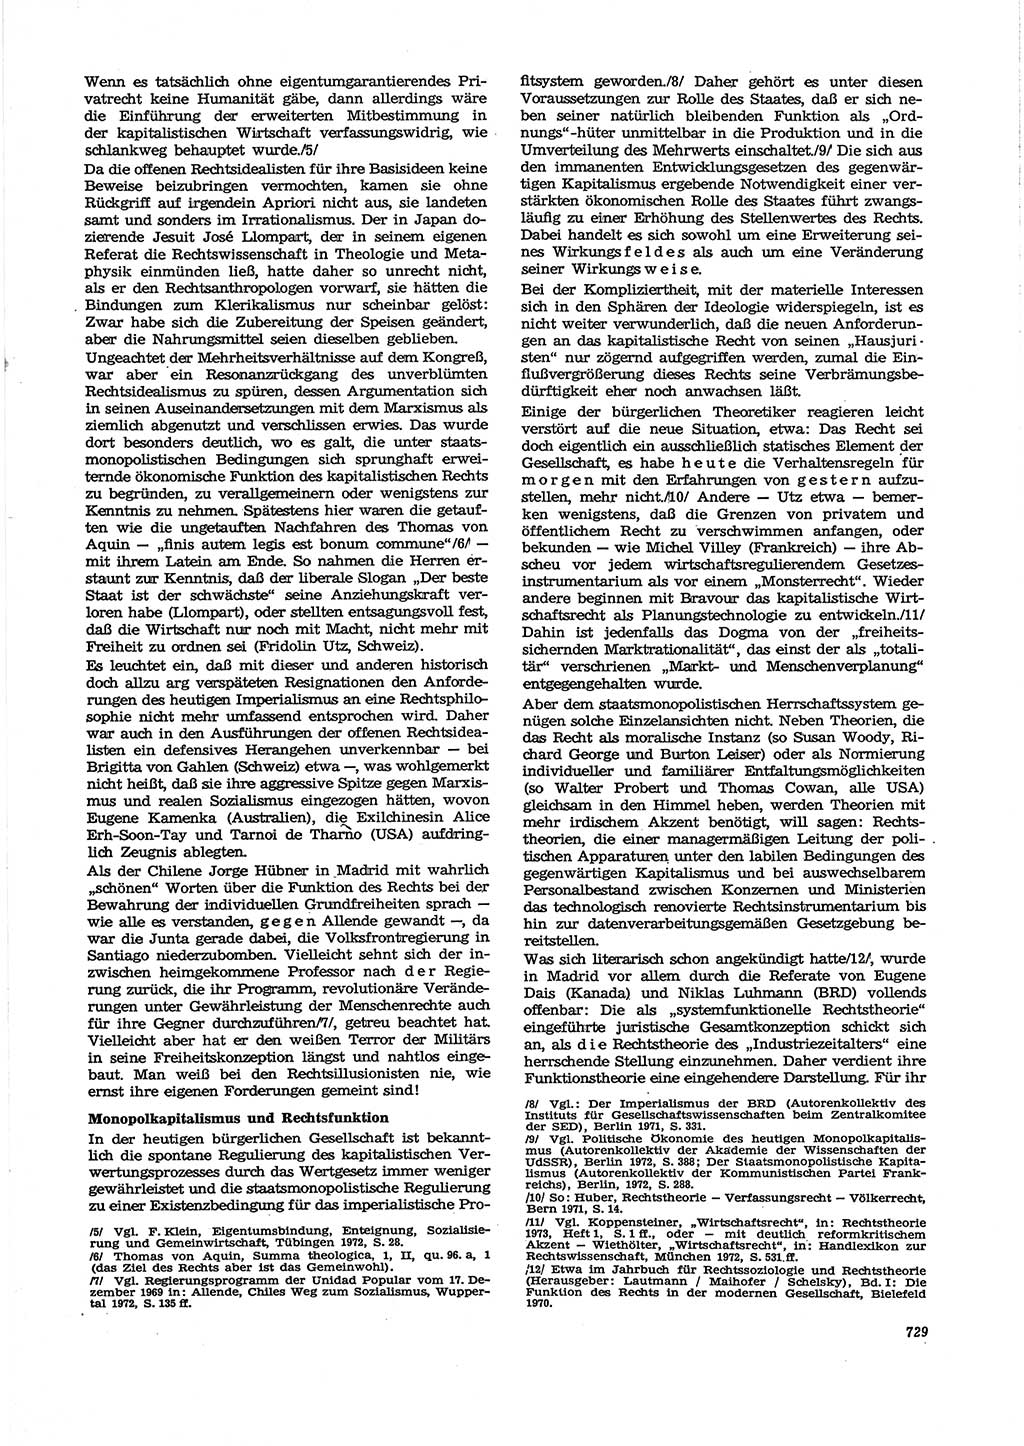 Neue Justiz (NJ), Zeitschrift für Recht und Rechtswissenschaft [Deutsche Demokratische Republik (DDR)], 27. Jahrgang 1973, Seite 729 (NJ DDR 1973, S. 729)